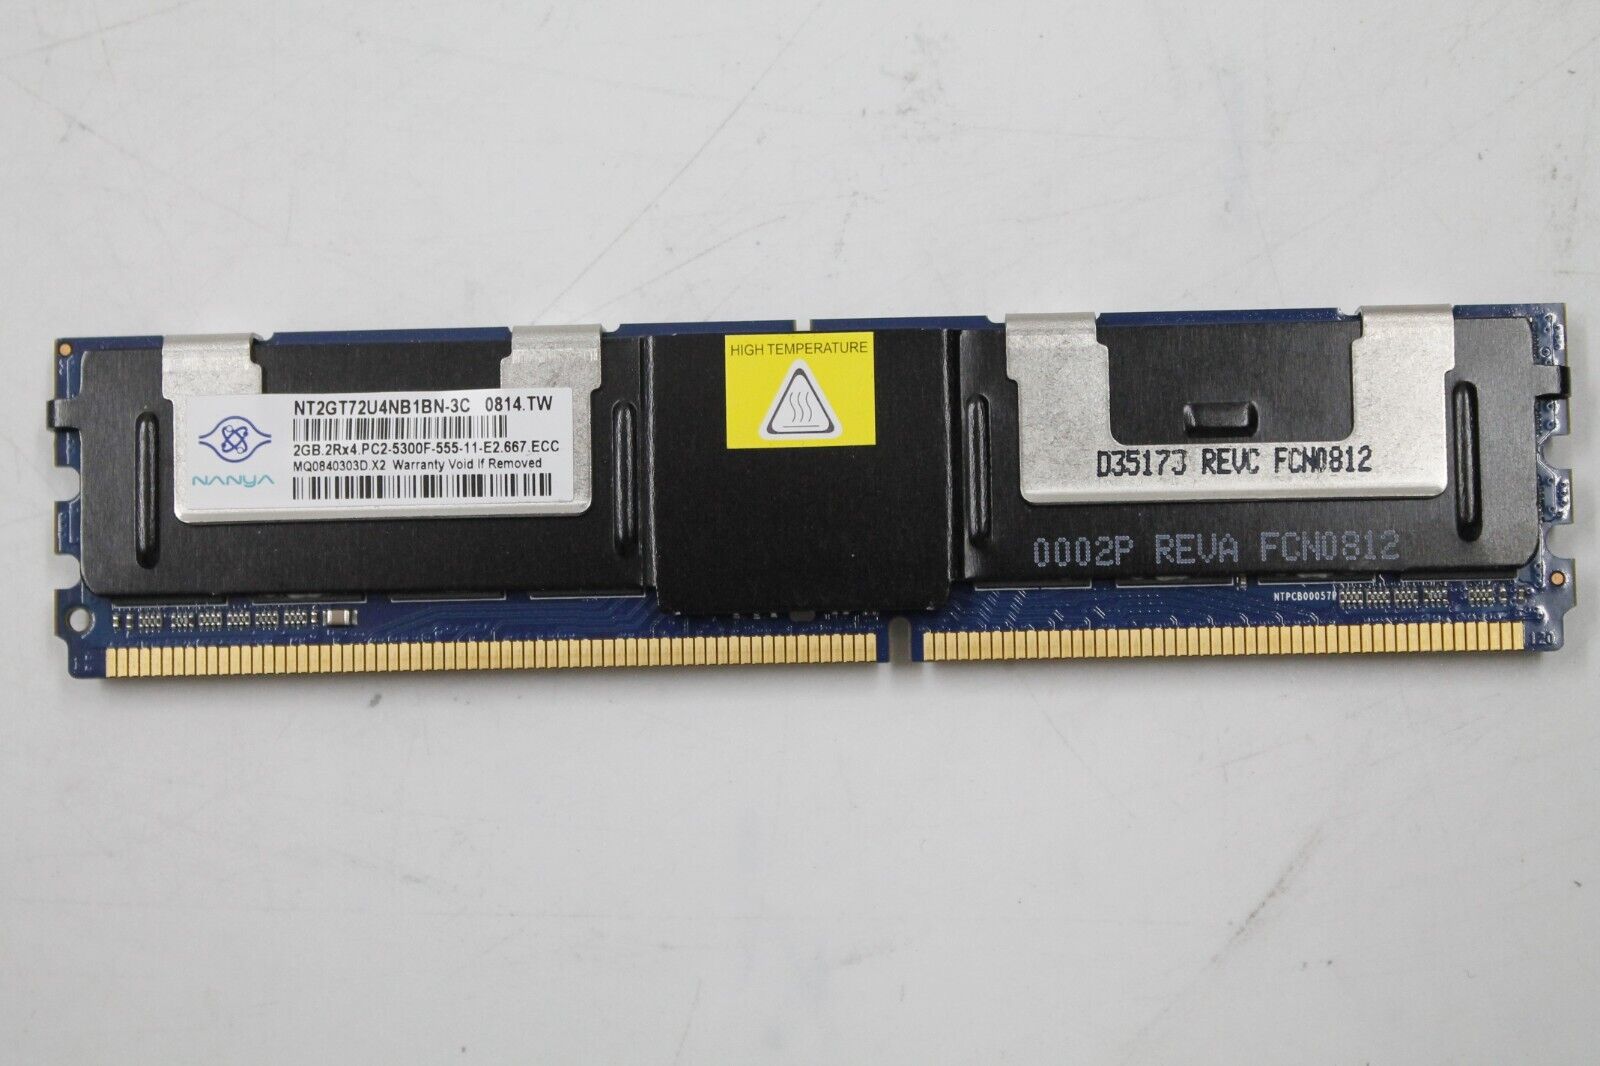 Nanya 2GB 2Rx4 PC2-5300F DDR2 667 MHz Memory (NT2GT72U4NB1BN-3C)